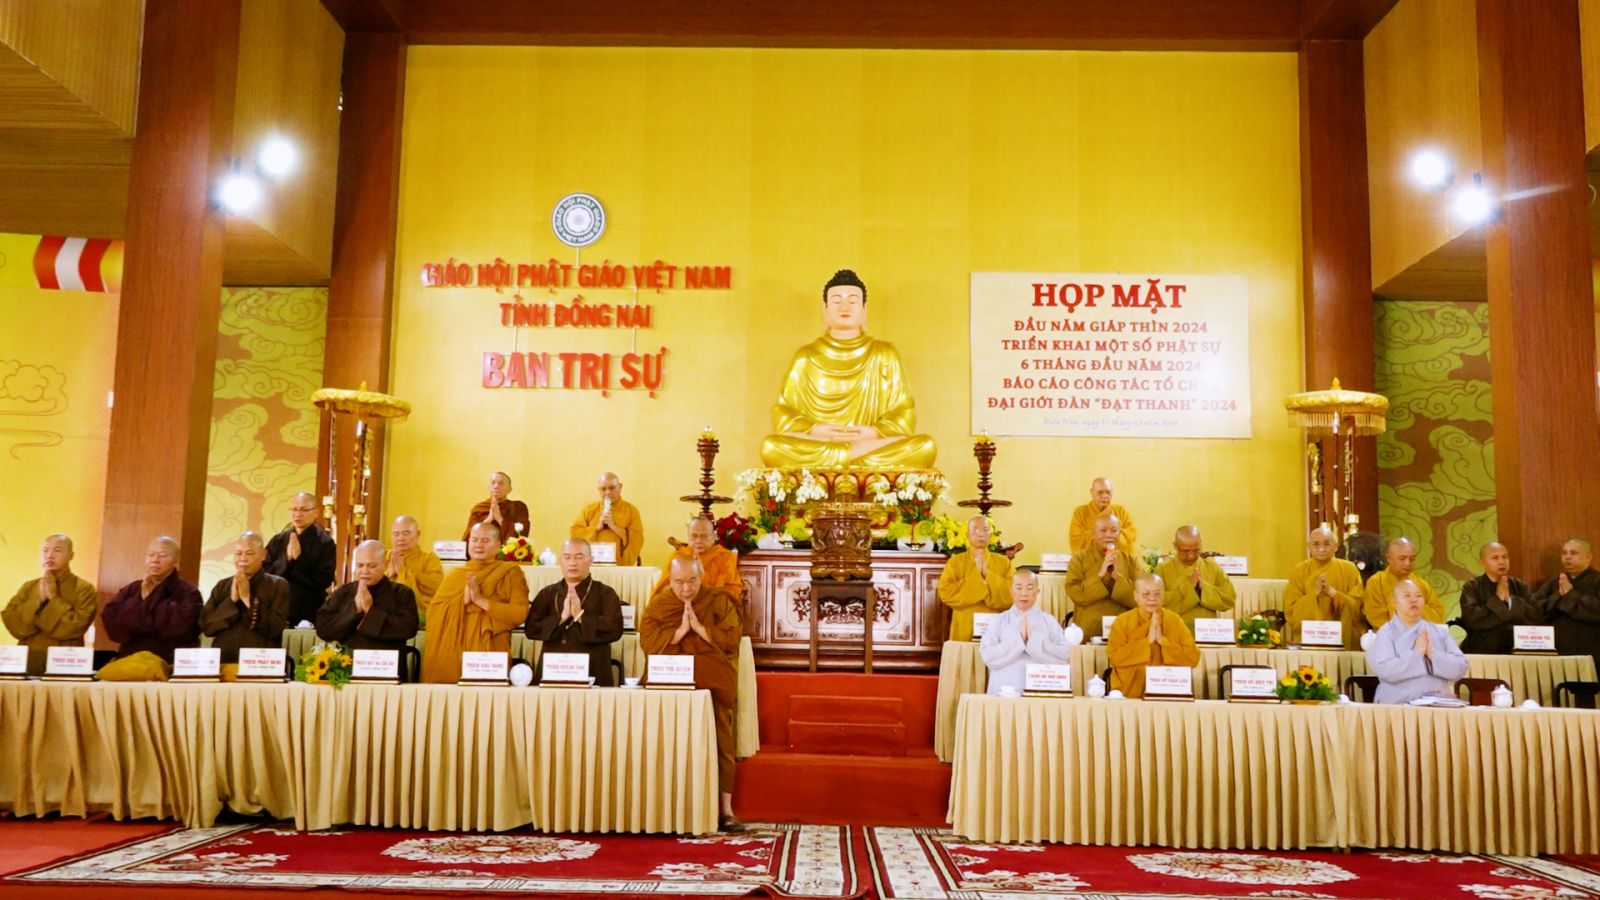 Đồng Nai: Triển khai Phật sự đầu năm 2024, báo cáo công tác tổ chức đại giới đàn Đạt Thanh 2024